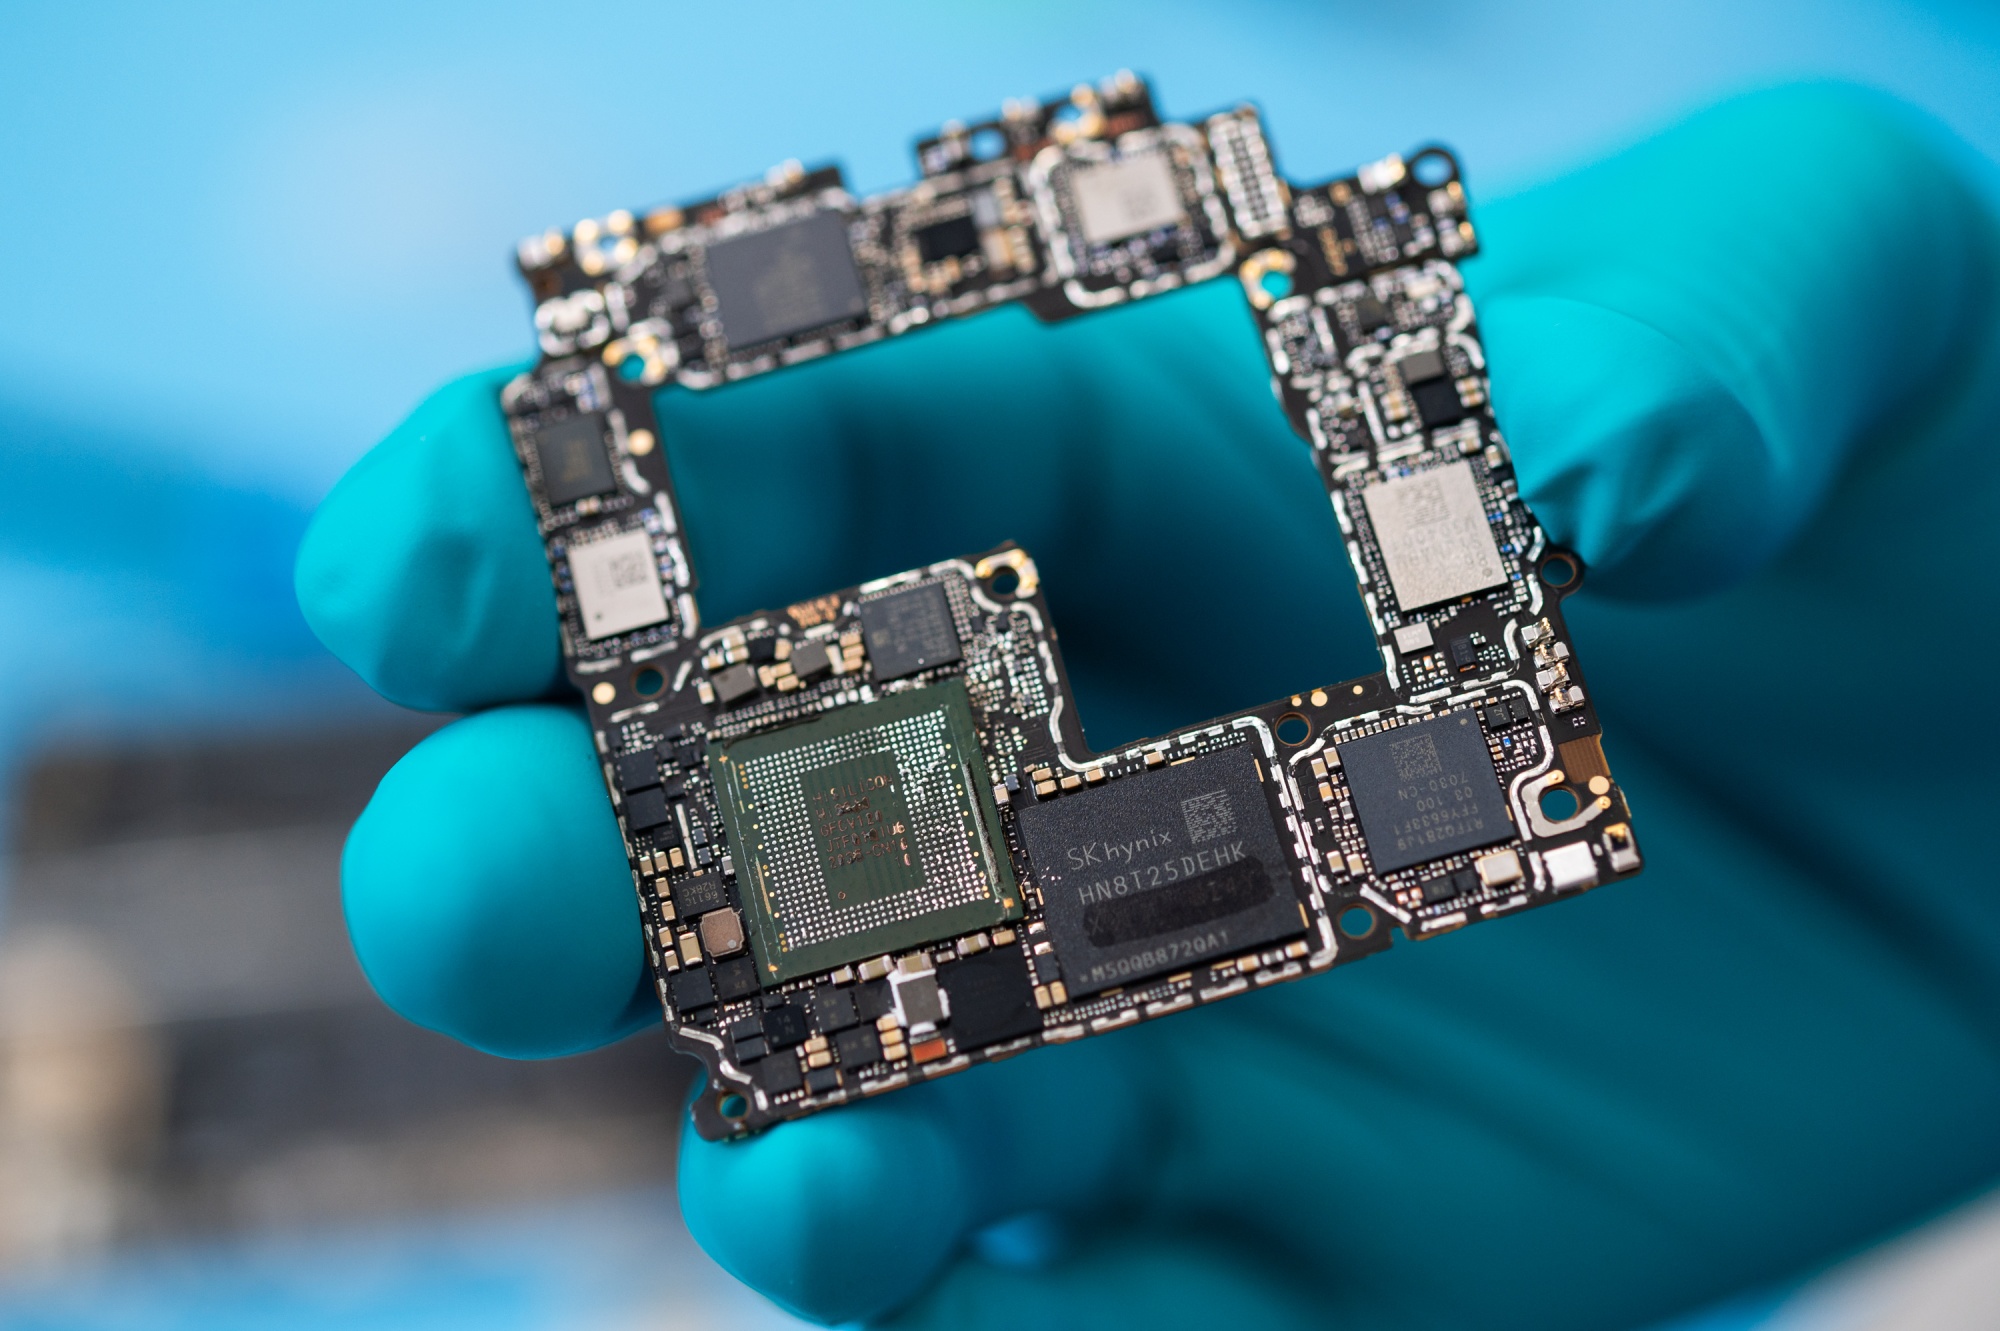 Władze USA są przekonane o niskiej wydajności nowych procesorów Huawei 7 nm